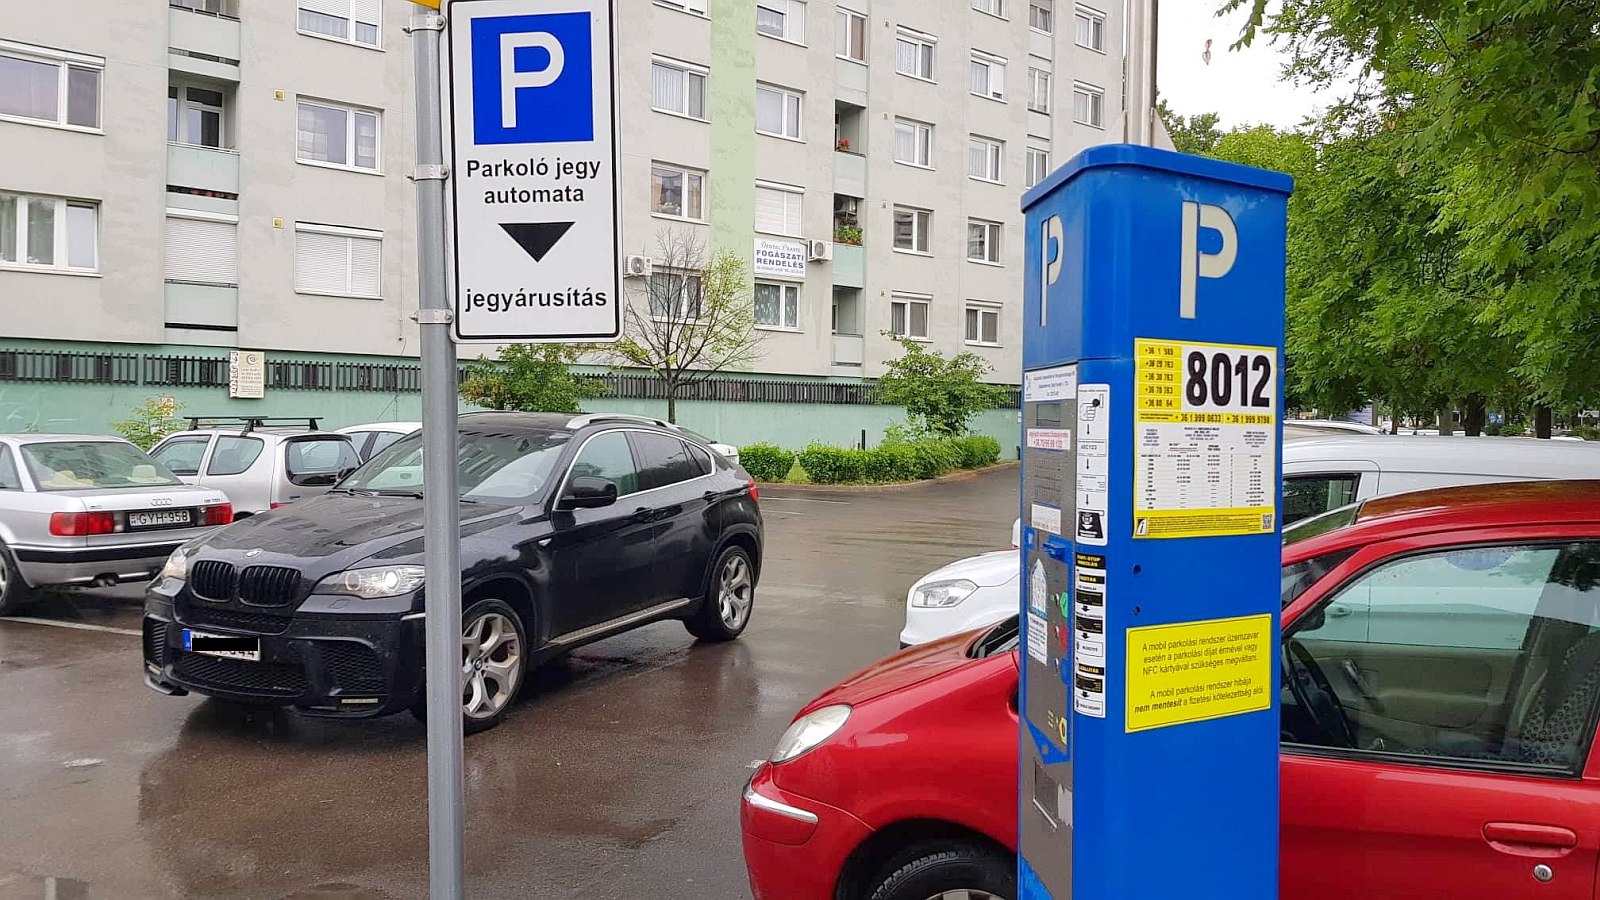 Jövő héten keddtől egészen január 1-ig ingyenes a parkolás Fehérváron